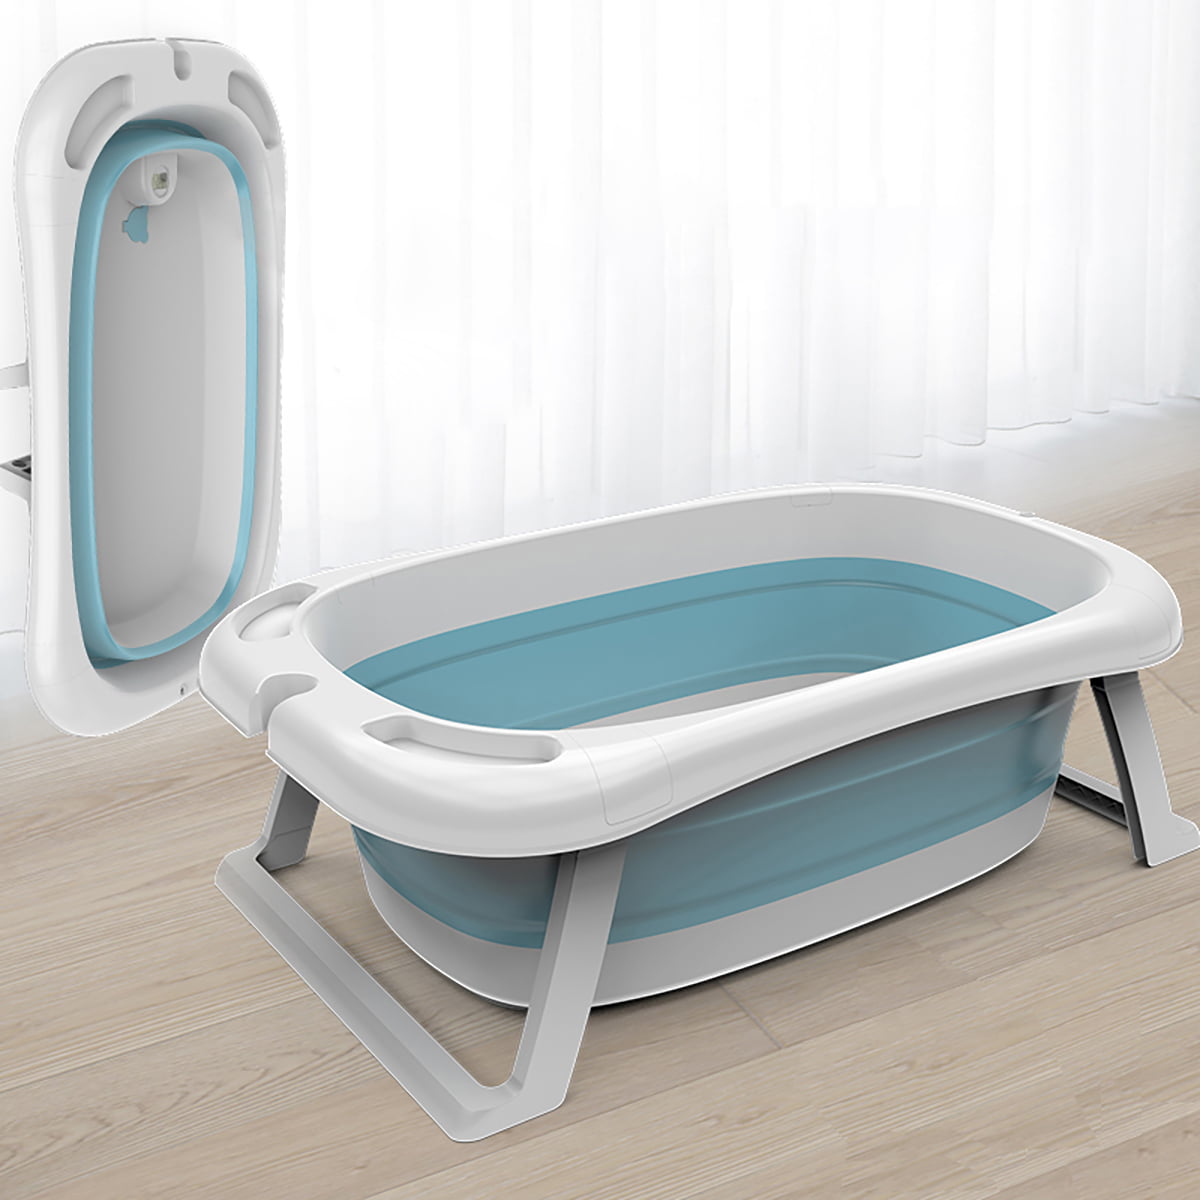 Washing Tub Pet Bath Tubs, Happy Life Portable Plastic Bathtub Blue